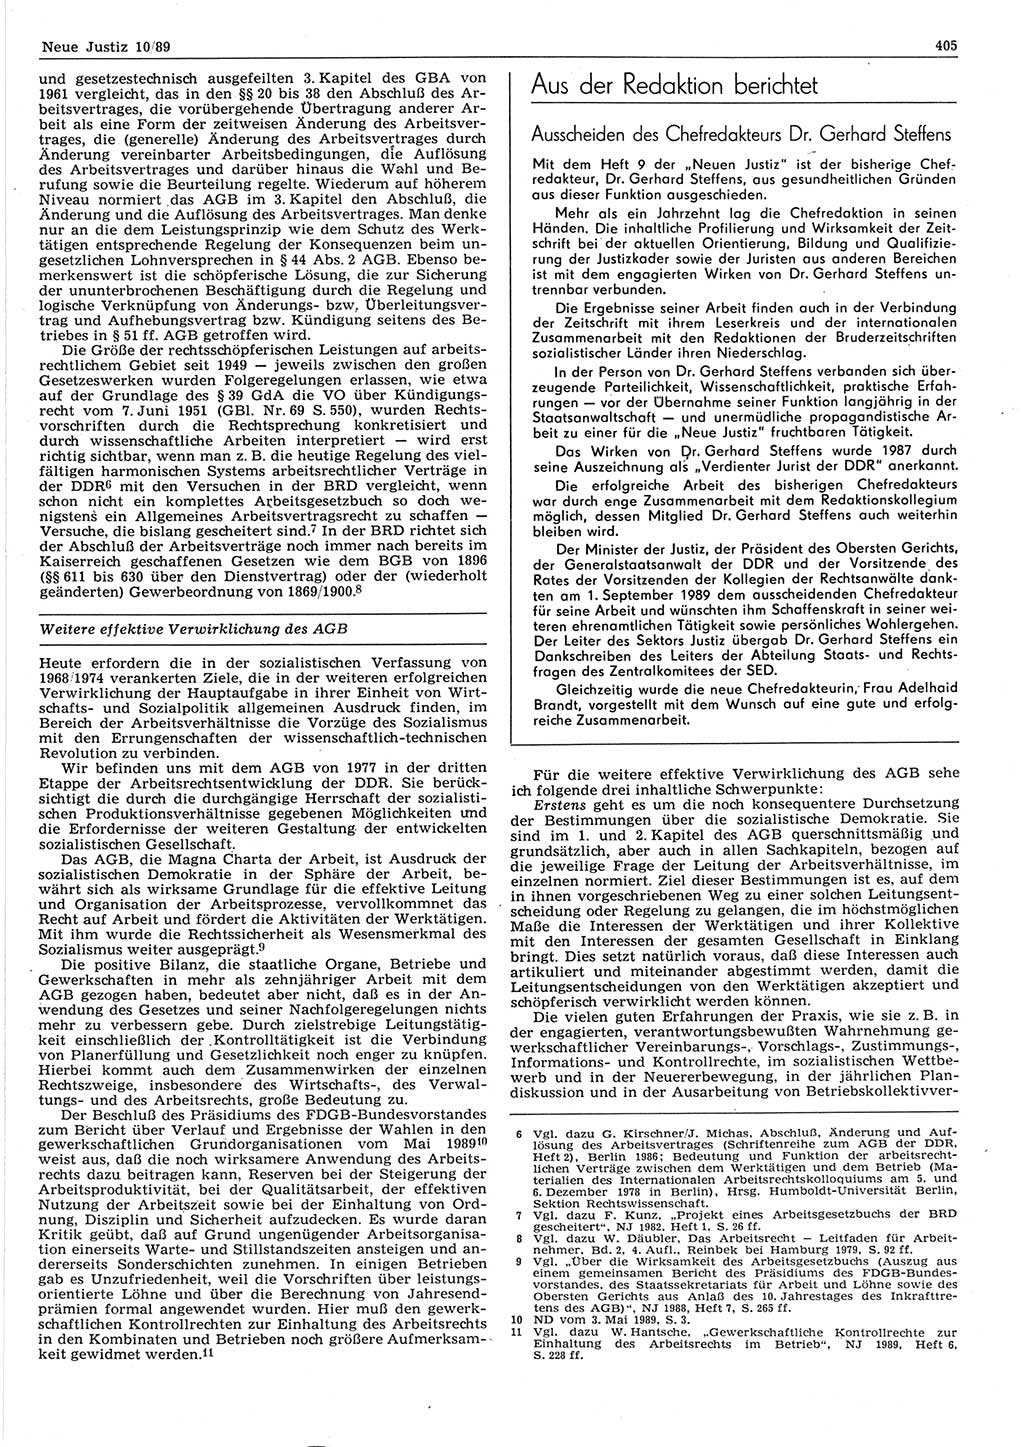 Neue Justiz (NJ), Zeitschrift für sozialistisches Recht und Gesetzlichkeit [Deutsche Demokratische Republik (DDR)], 43. Jahrgang 1989, Seite 405 (NJ DDR 1989, S. 405)